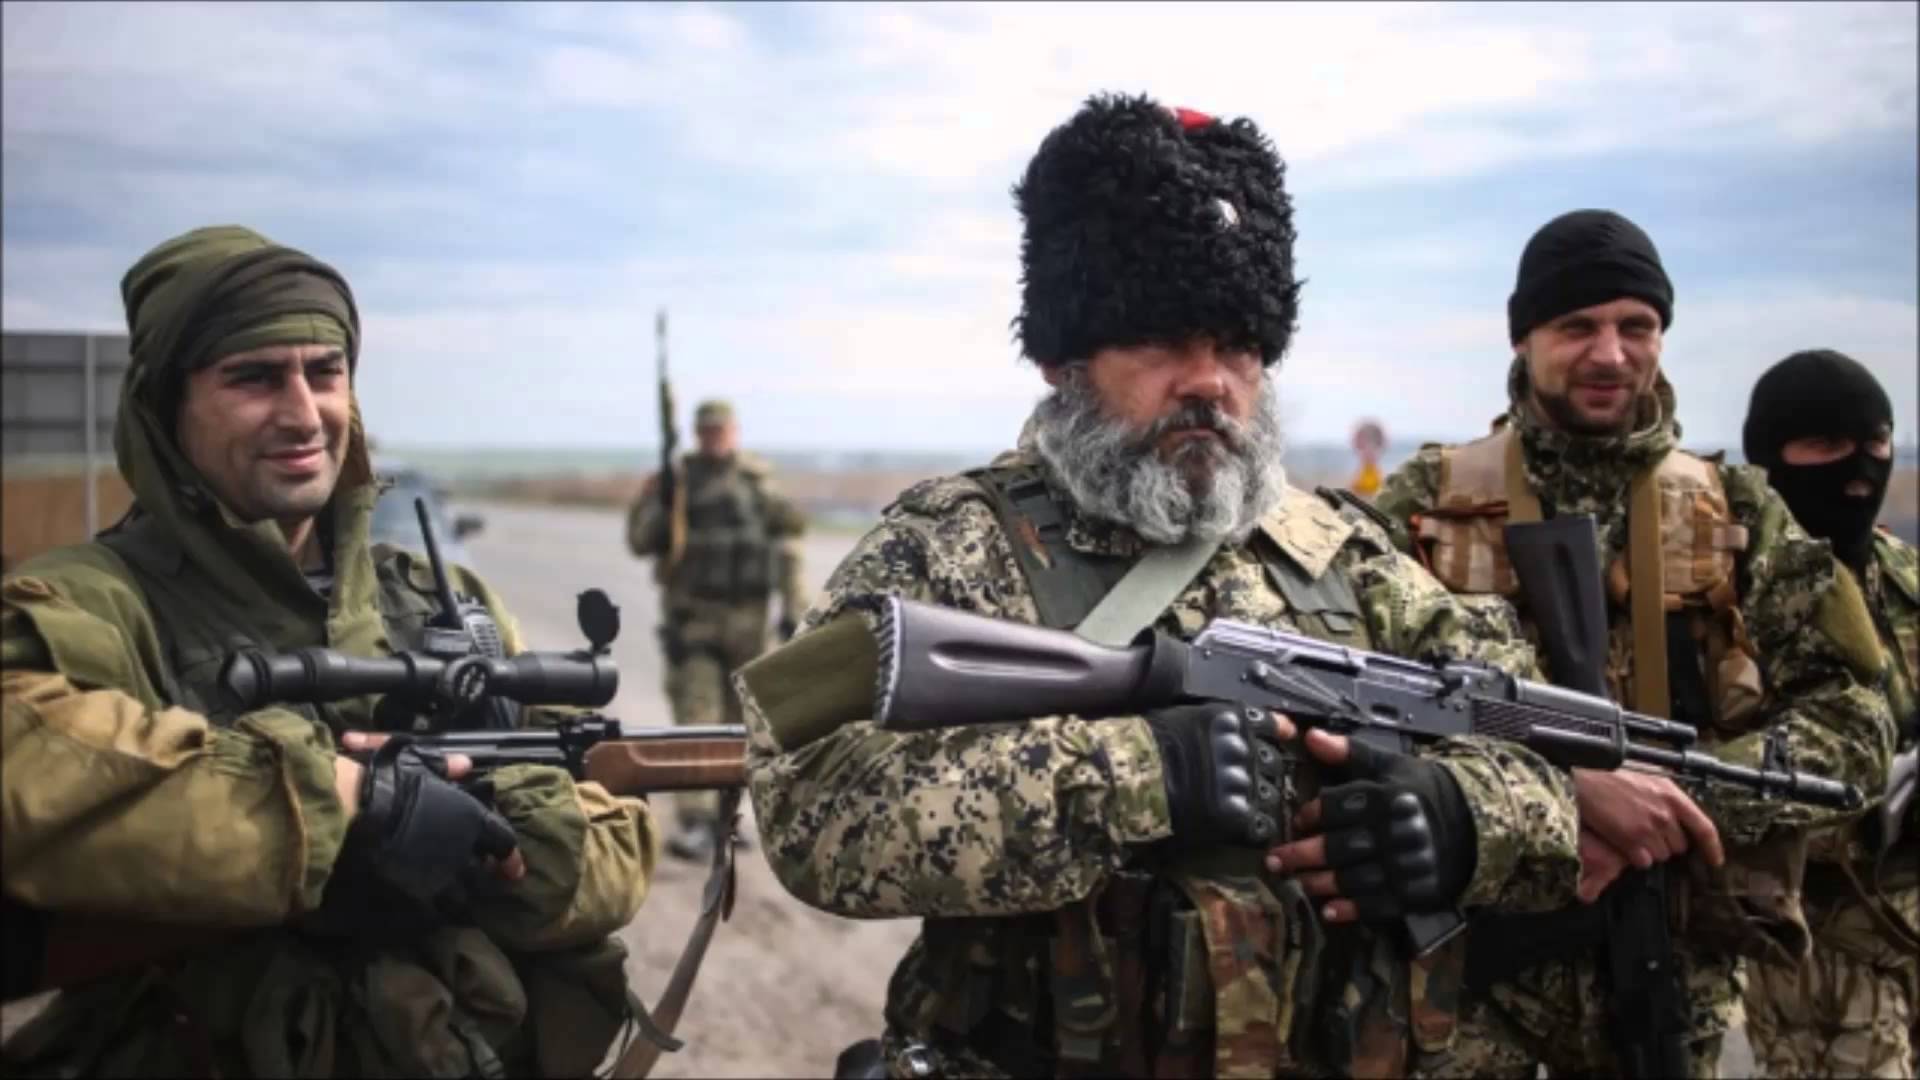 Bojownicy w Donbasie. Fot. Wikimedia Commons